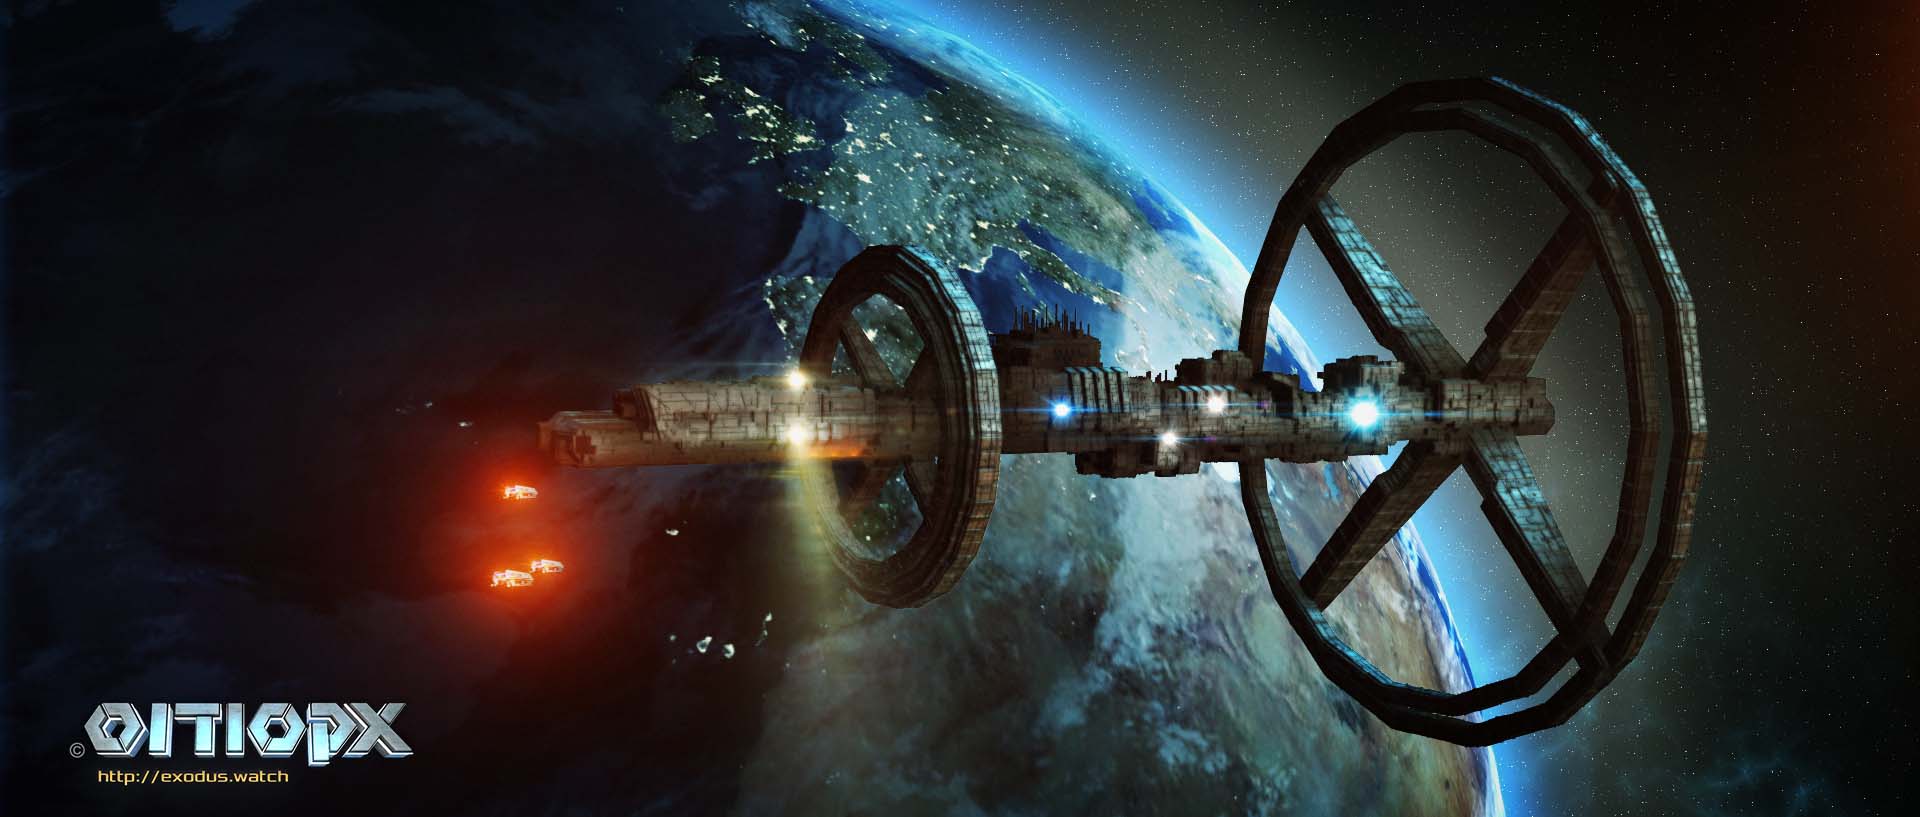 2072: בניית ספינת החלל אקסודוס